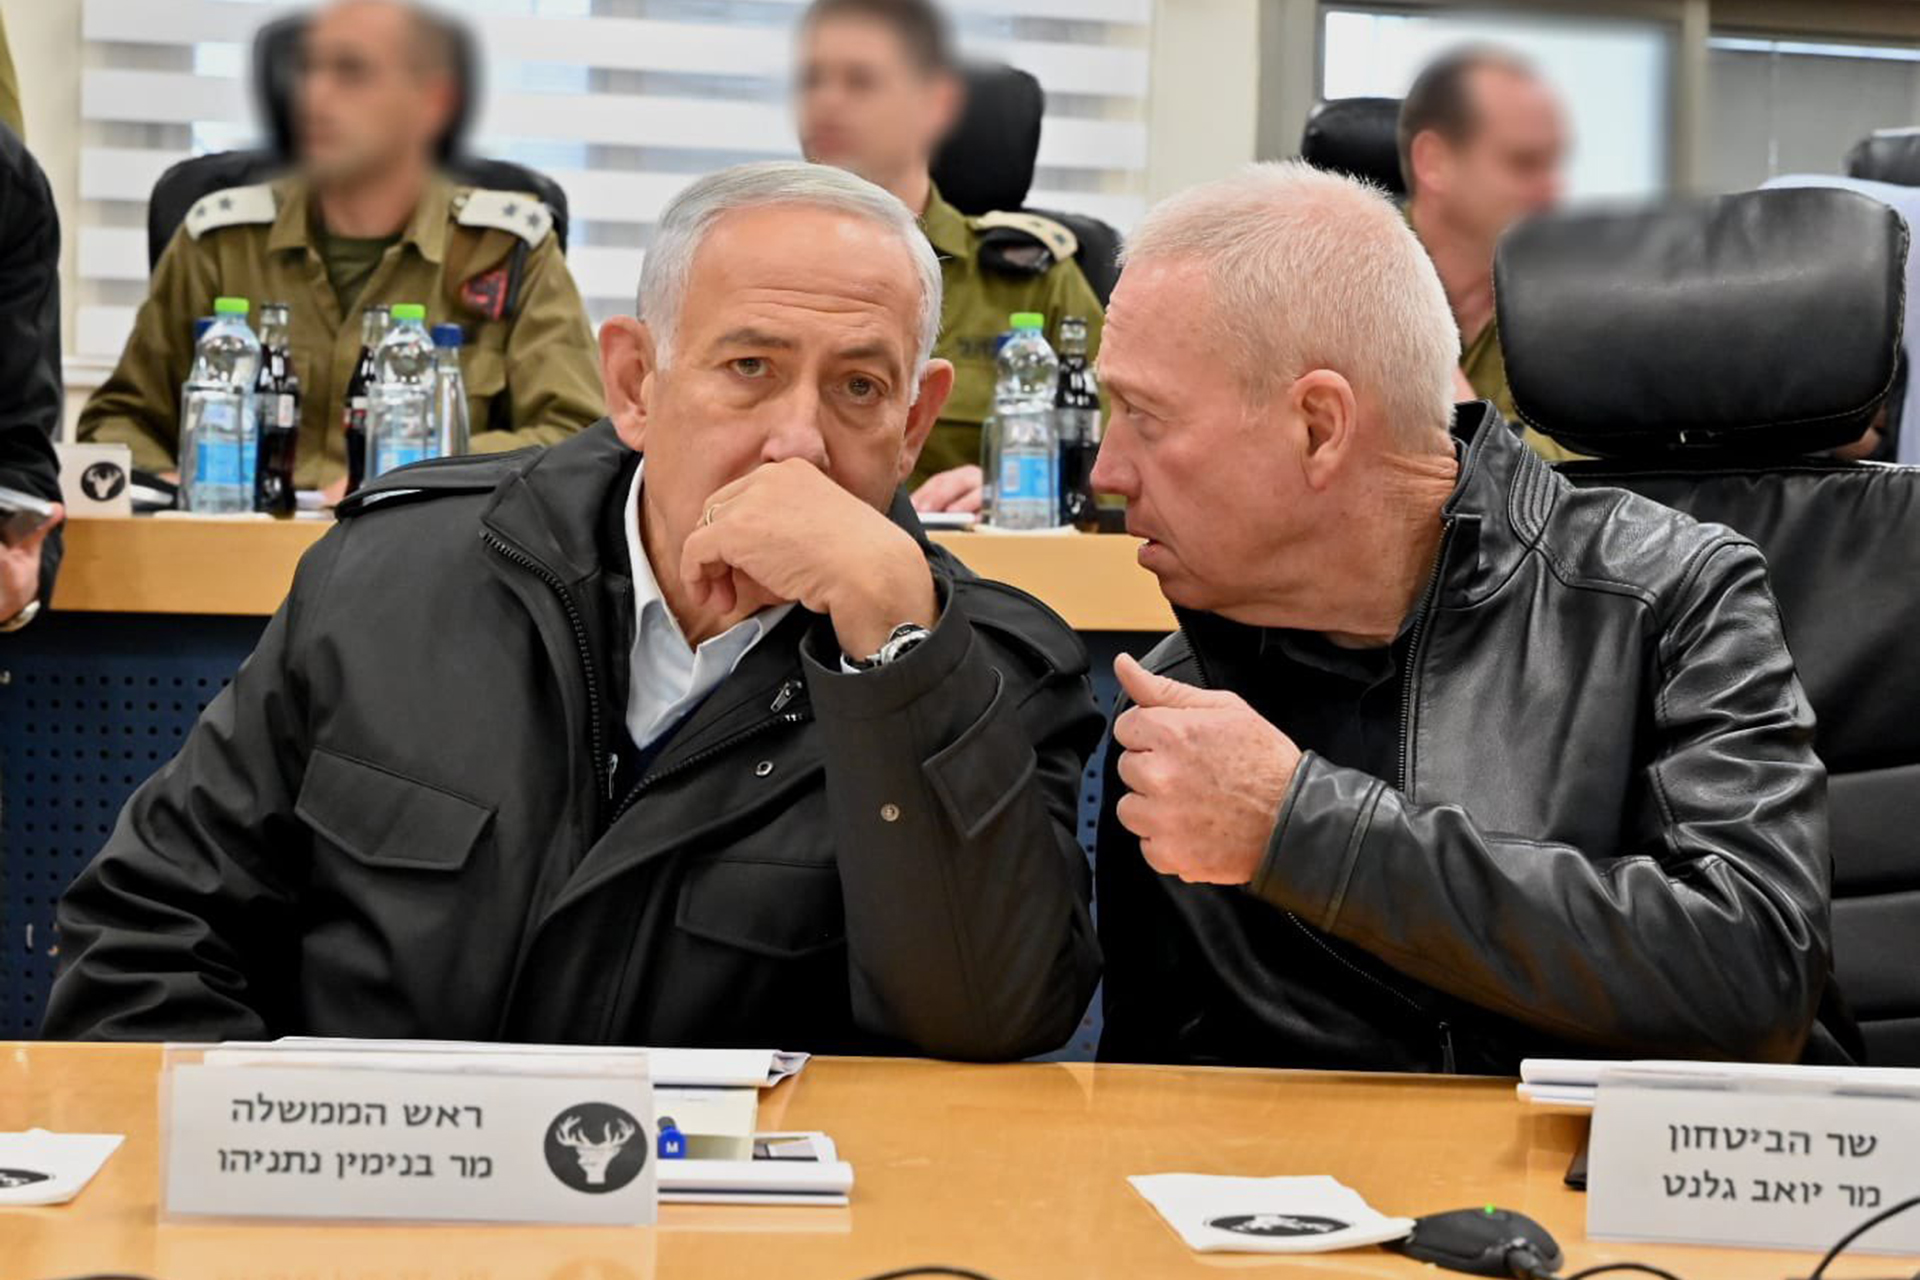 ماذا لو صدرت مذكرات اعتقال دولية بحق قادة إسرائيل؟ | سياسة – البوكس نيوز